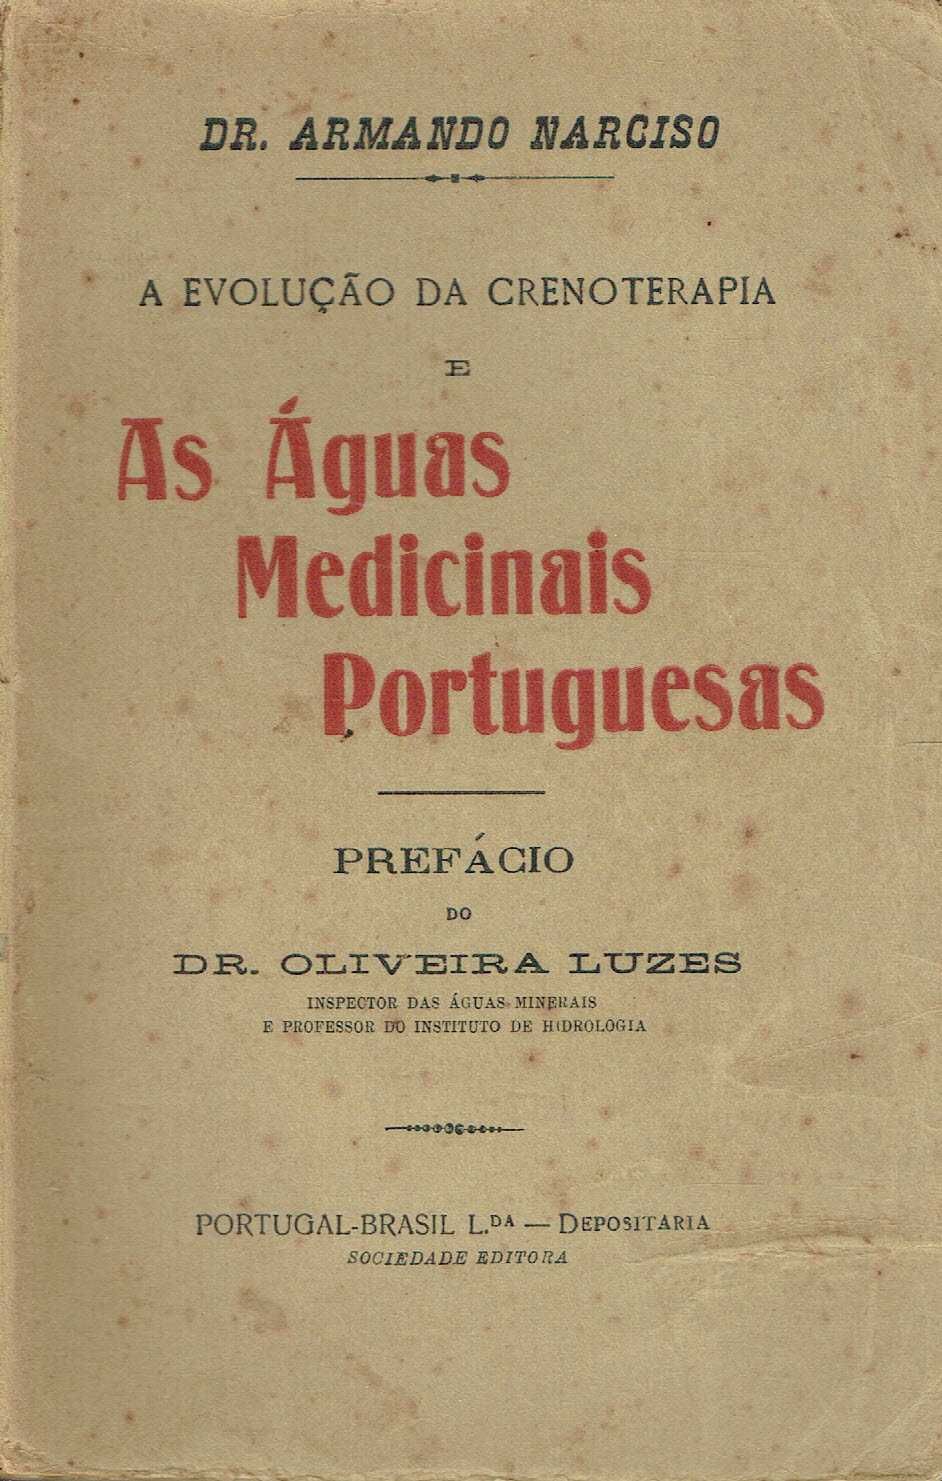 8810
A Evolução da Crenoterapia e as Águas Medicinais Portuguesas